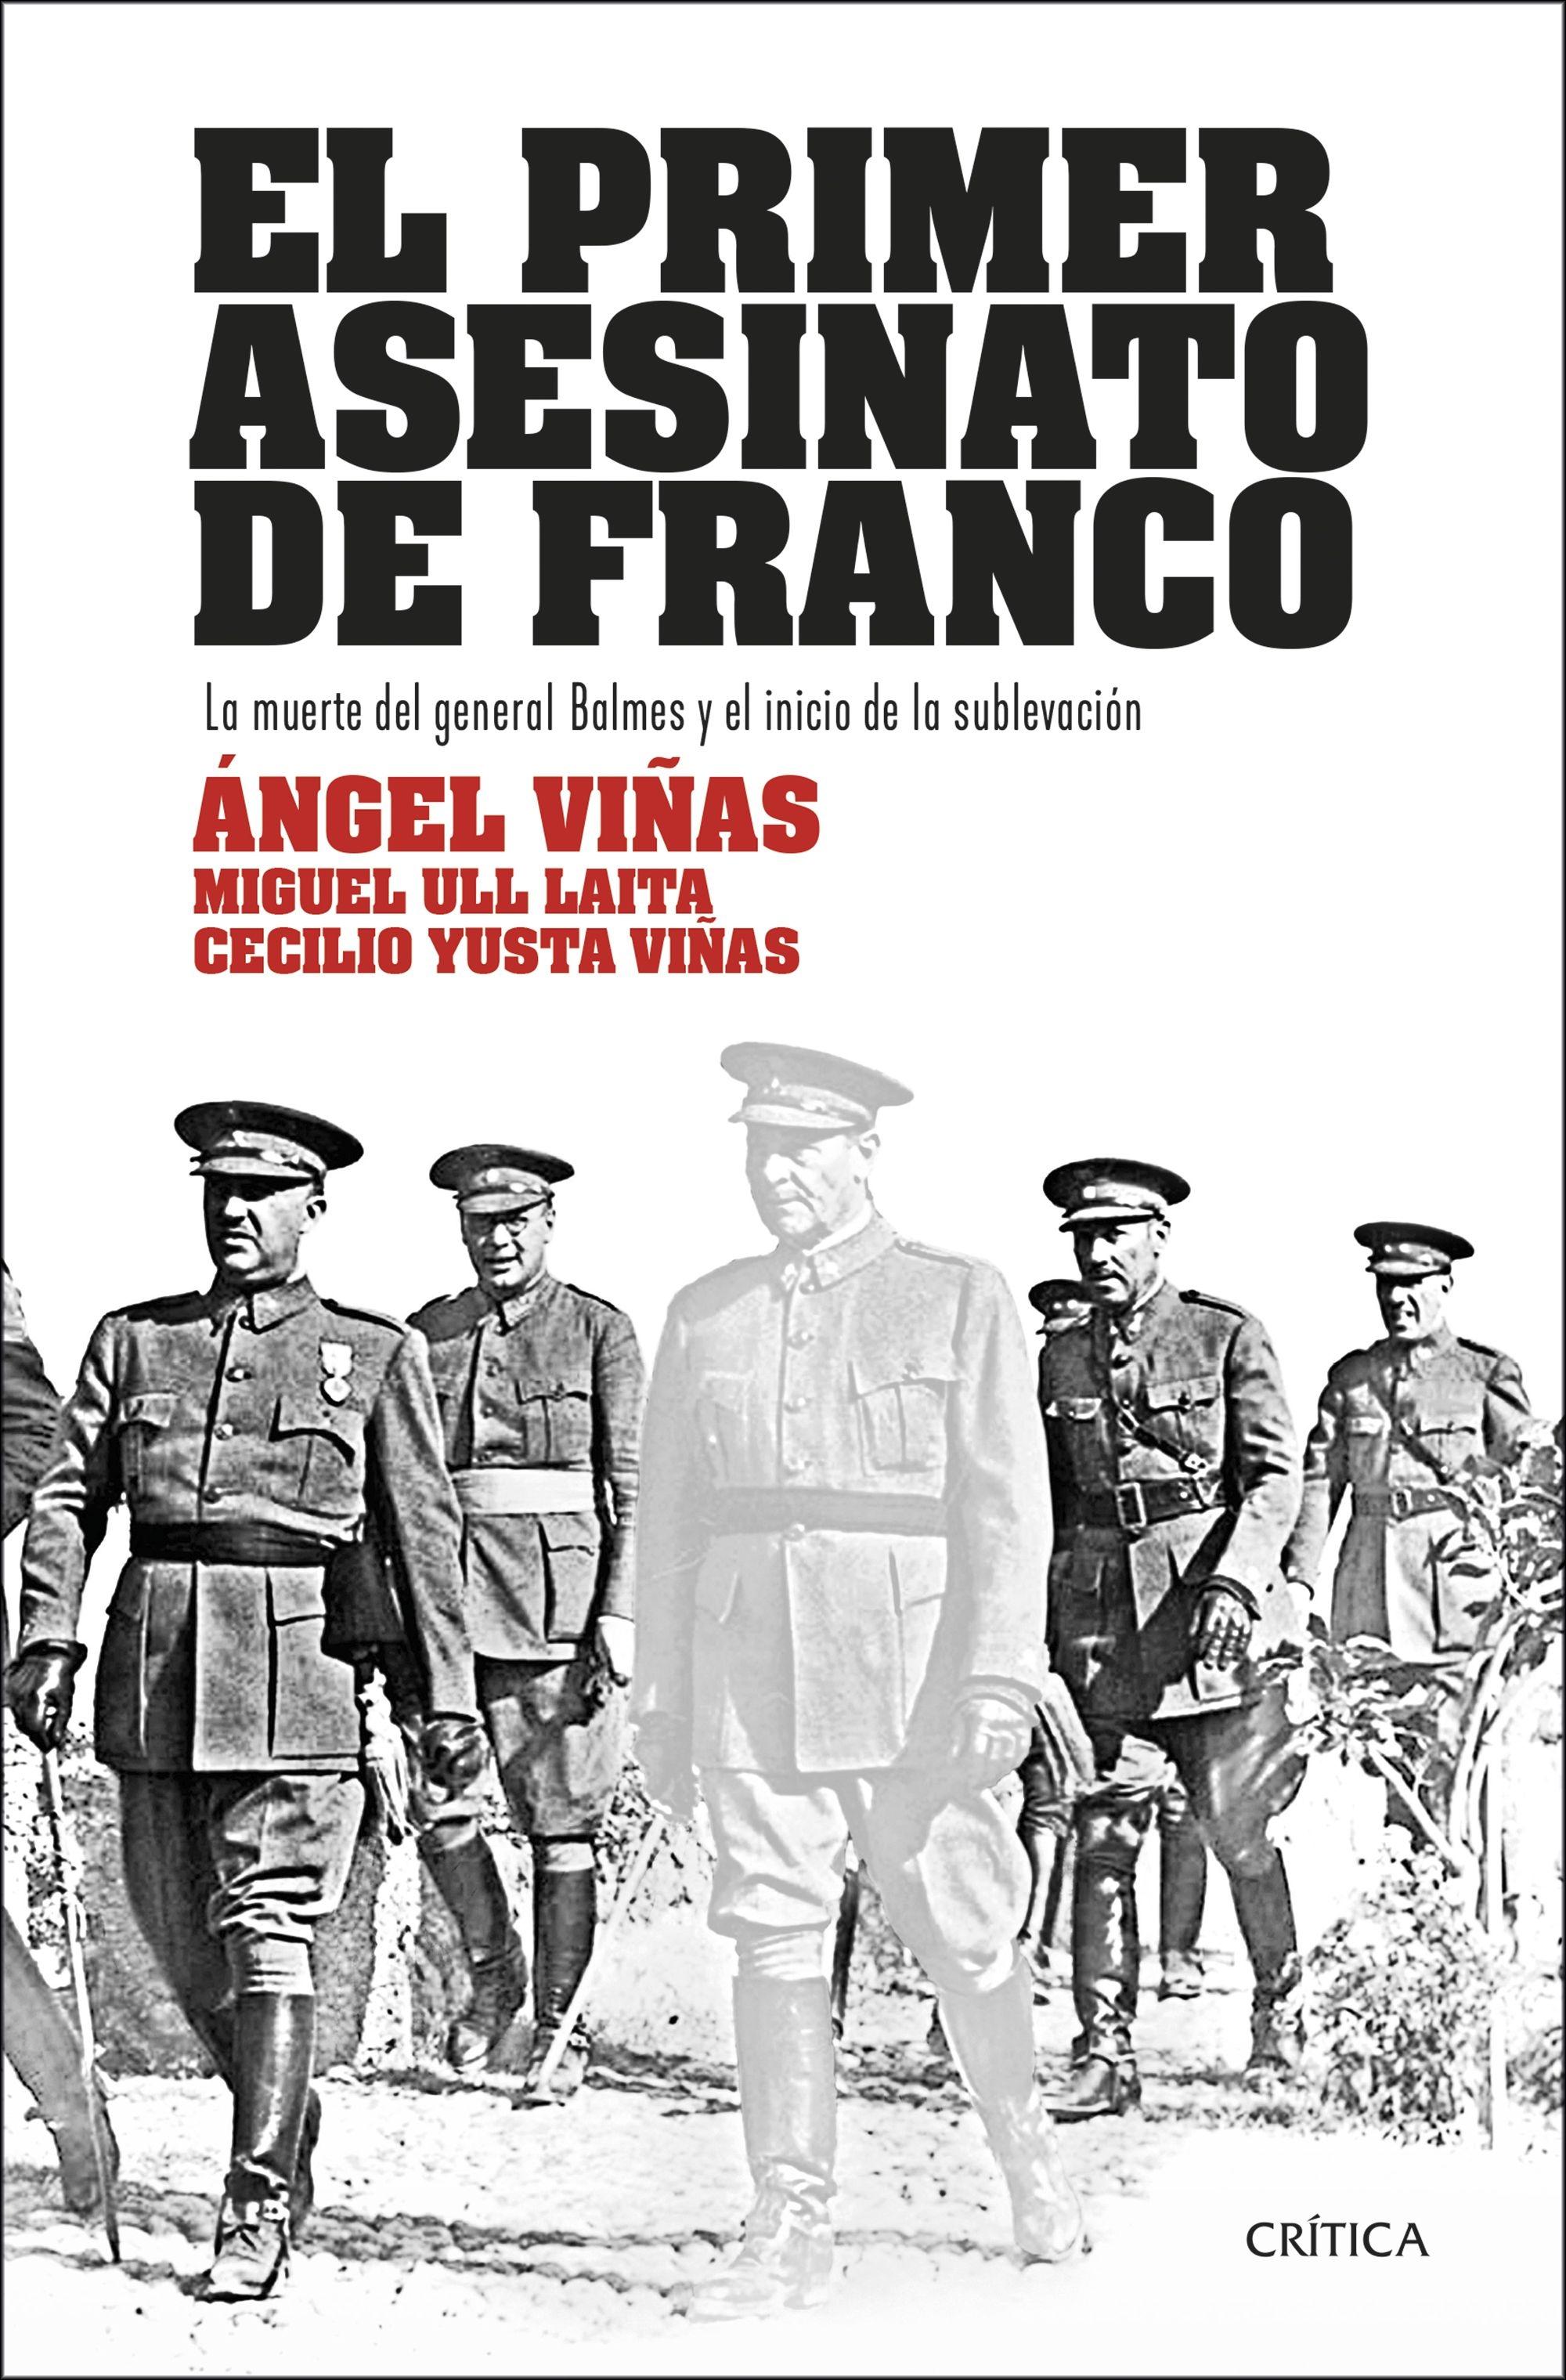 El Primer Asesinato de Franco "La Muerte del General Balmes y el Inicio de la Sublevación"